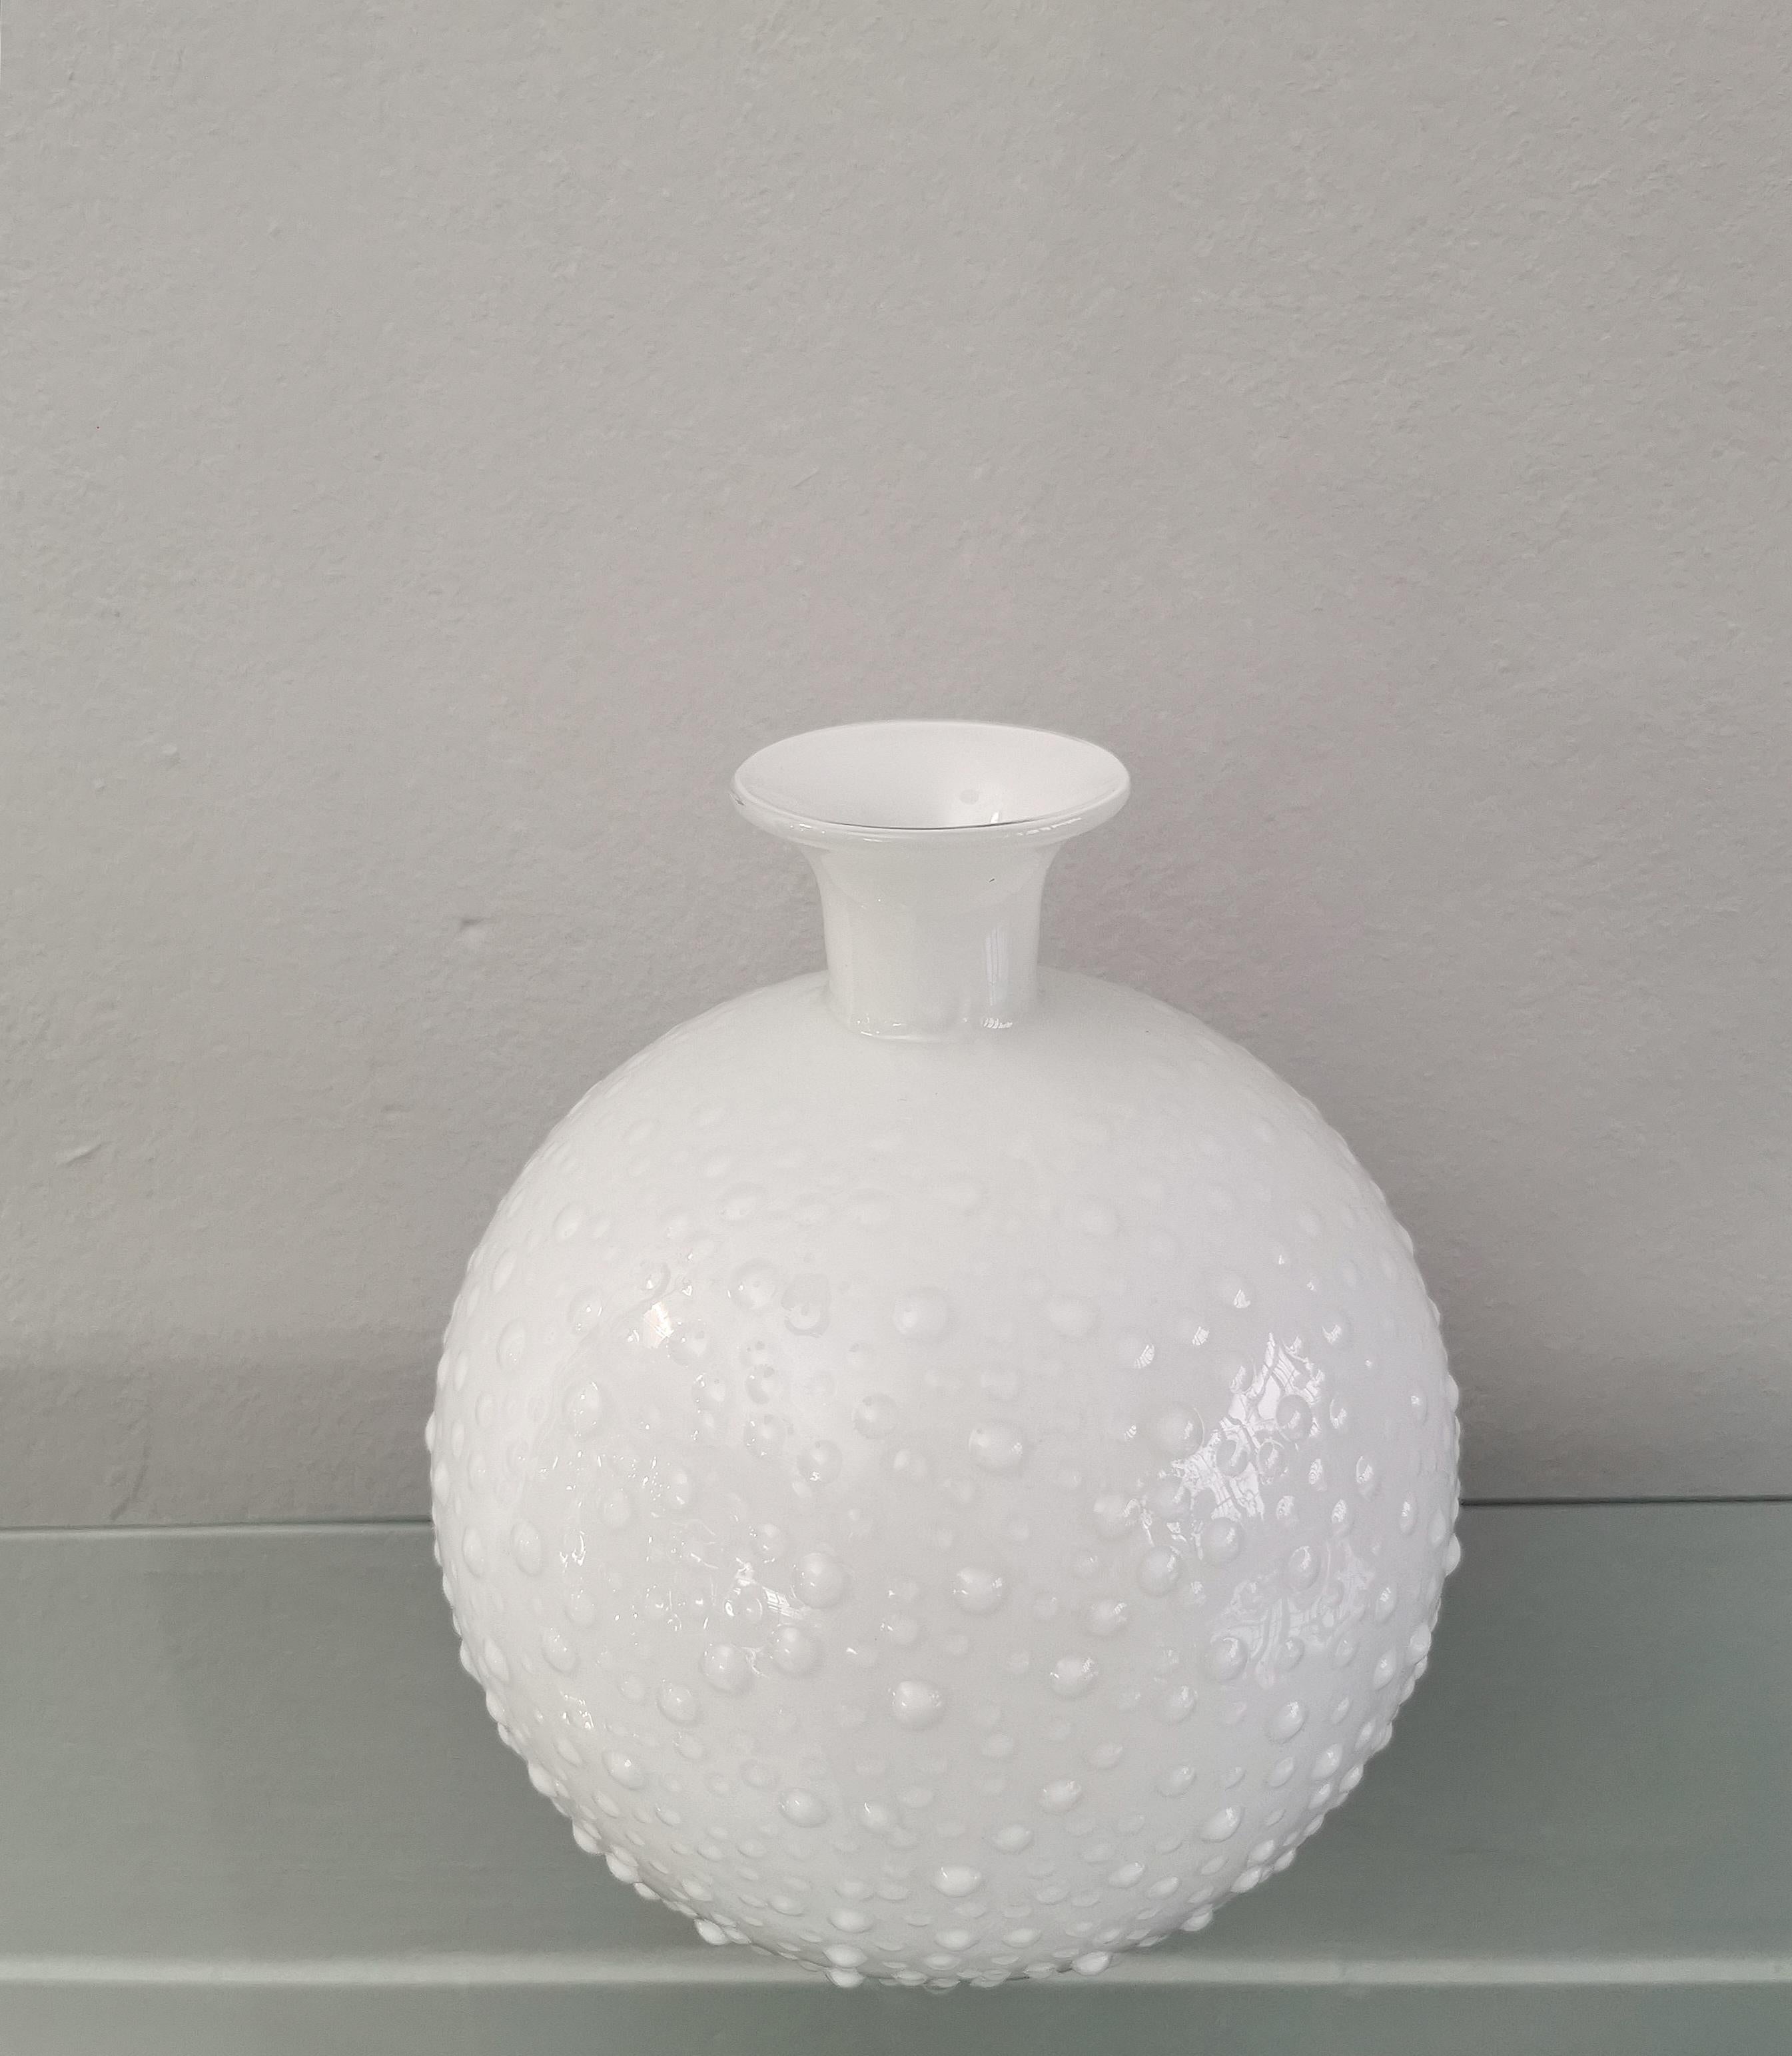 Vase Vessel White Murano Glass Round Decorative Object Italian Design 1980s In Good Condition For Sale In Palermo, IT